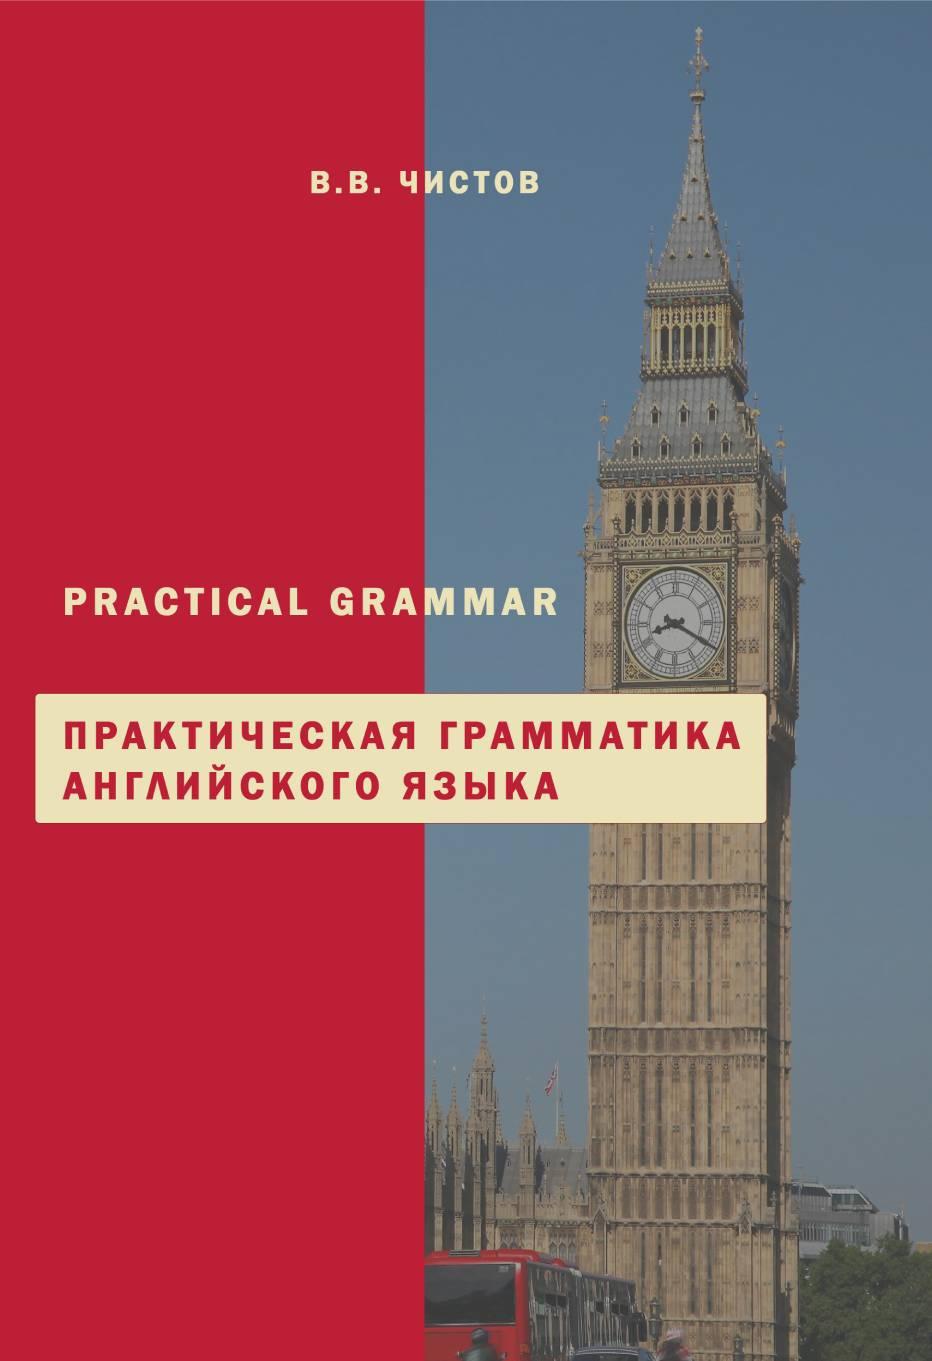 Практическая грамматика английского языка. Practical Grammar. Учебное пособие для изучающих английскийразговорный язык.